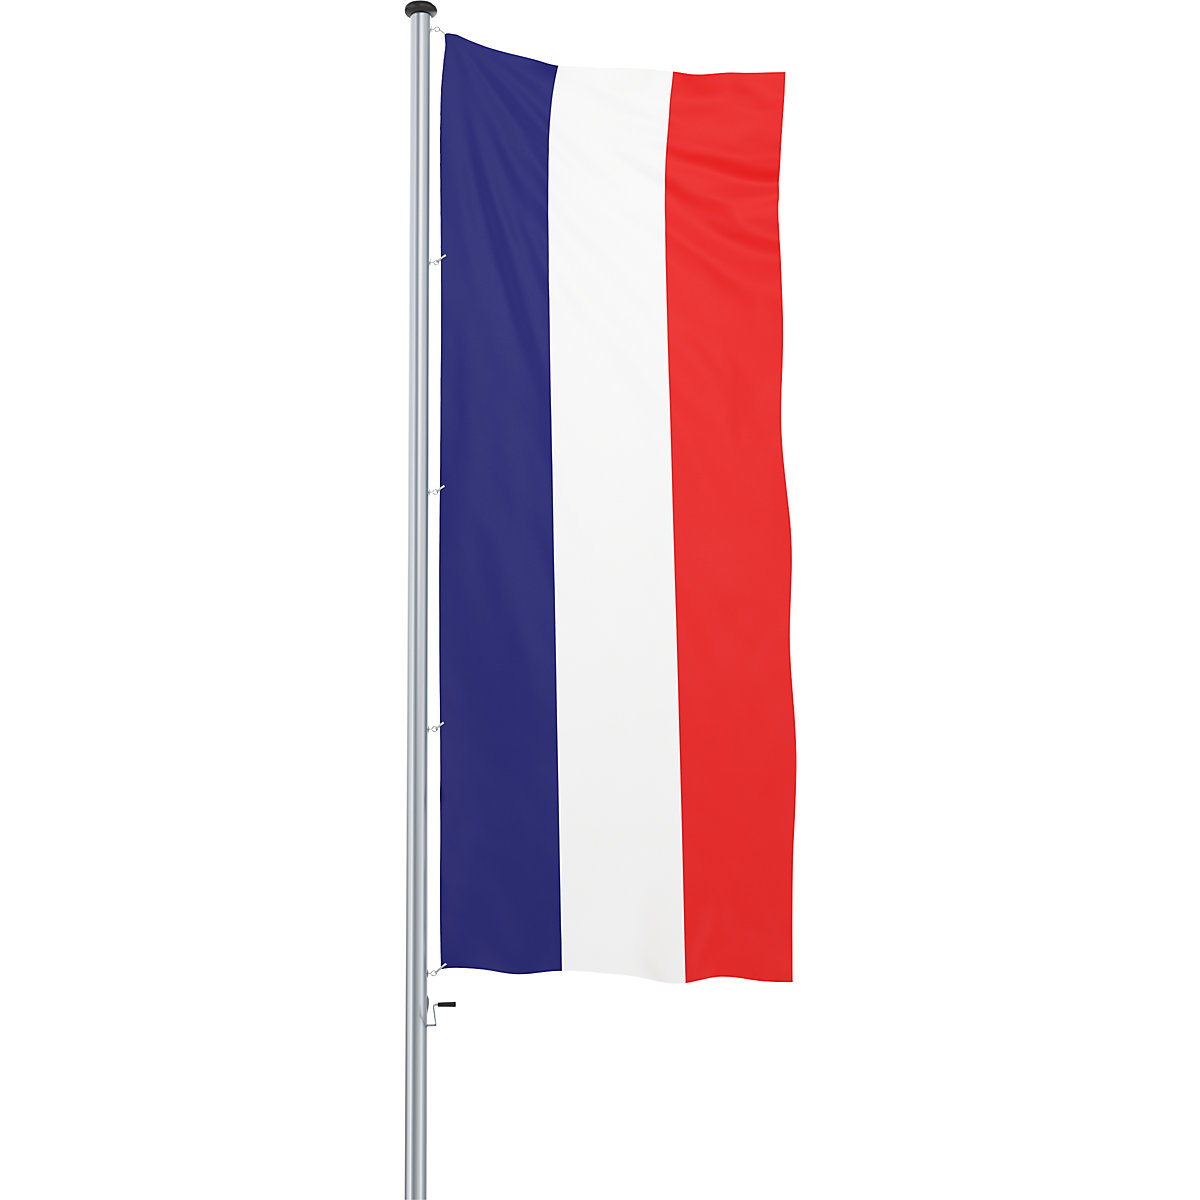 Mannus – Bandera para izar/bandera del país (Imagen del producto 56)